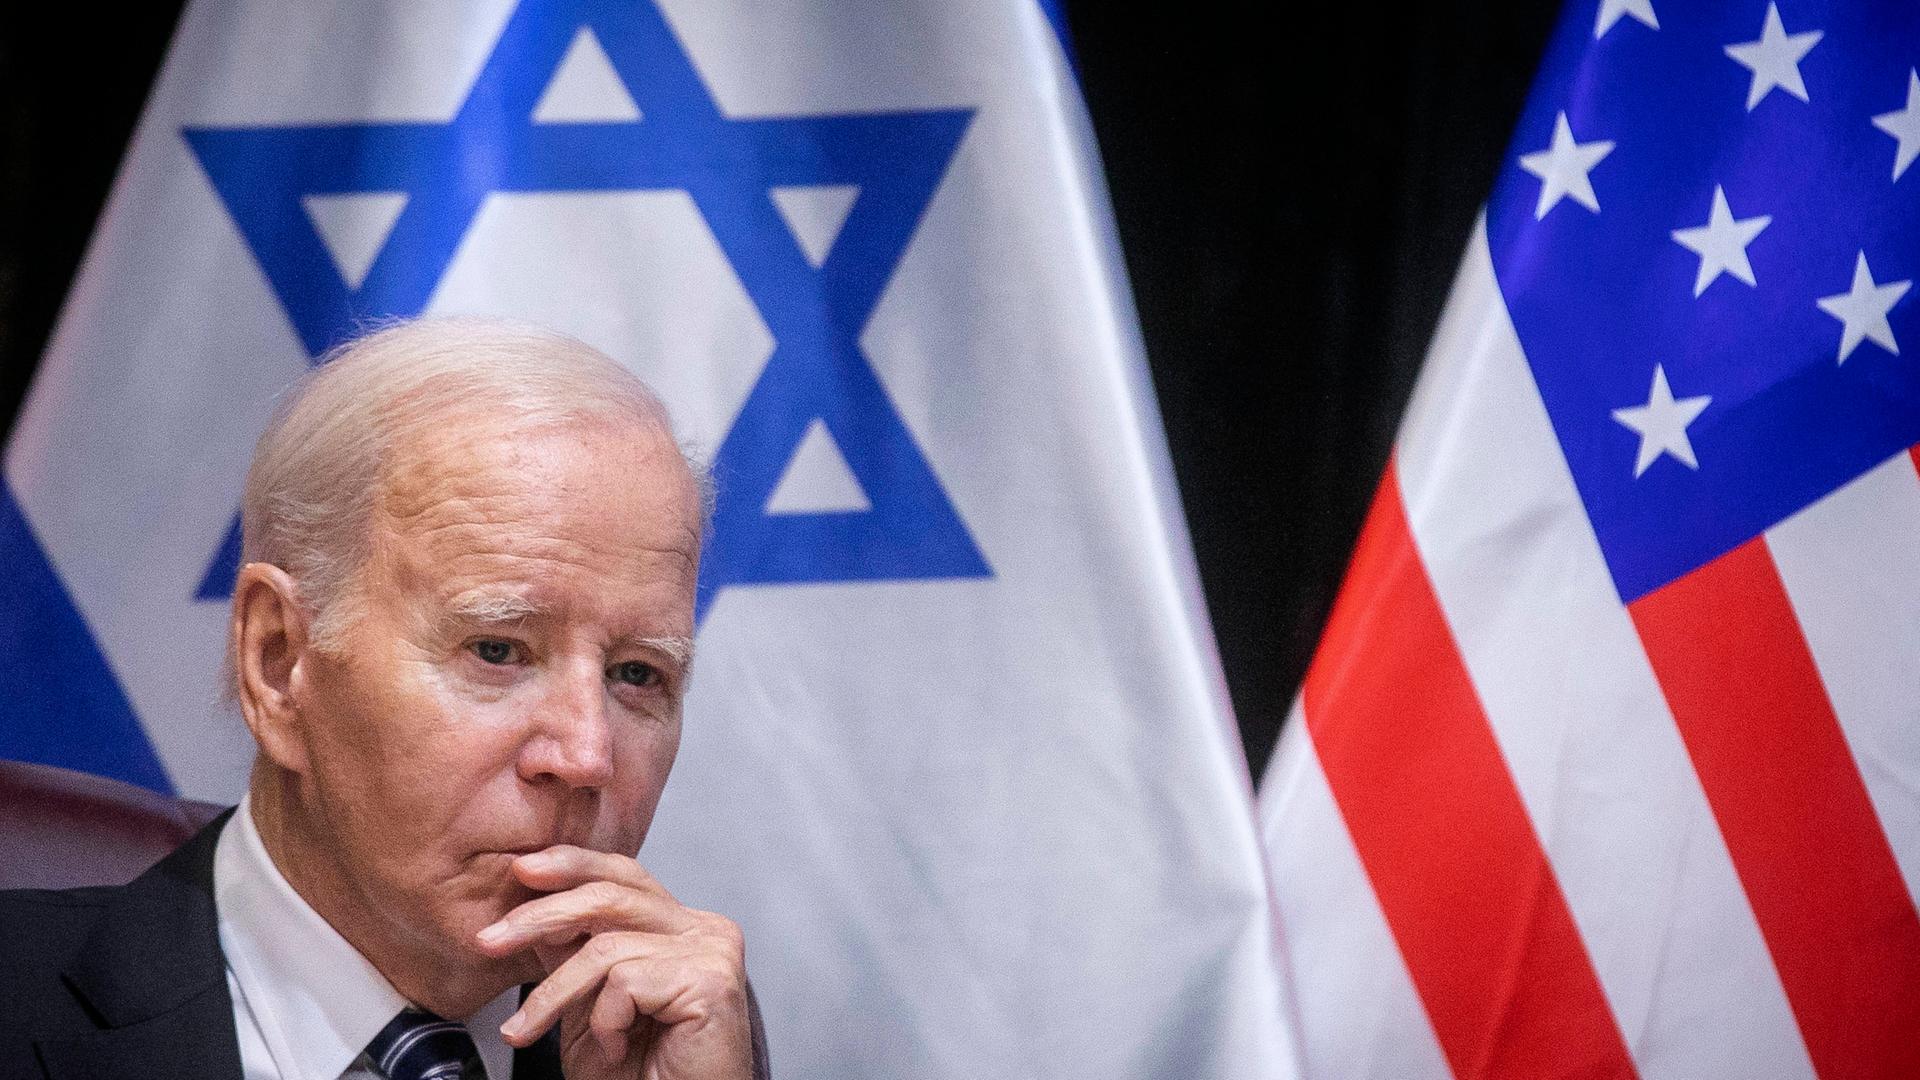 Angespannte Lage im Nahen Osten - Biden kehrt früher nach Washington zurück als geplant - neue Schutzmaßnahmen für Israels Bevölkerung